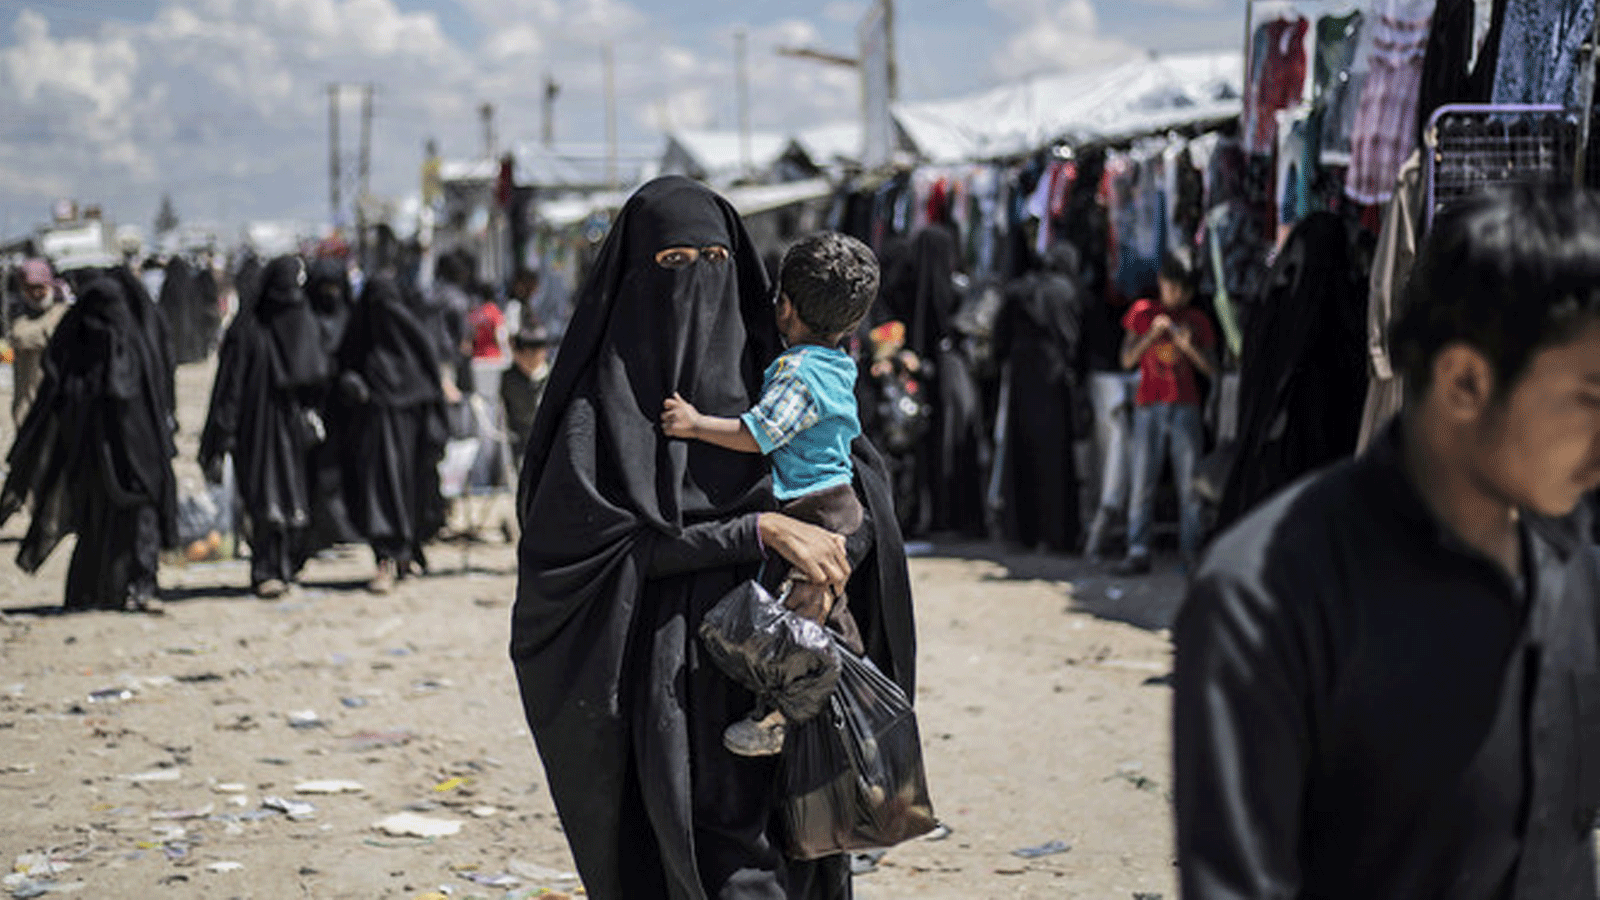 امرأة نازحة من محافظة دير الزور شرقي سوريا تحمل طفلها أثناء سيرها في مخيم الهول للنازحين بمحافظة الحسكة شمال شرقي سوريا.